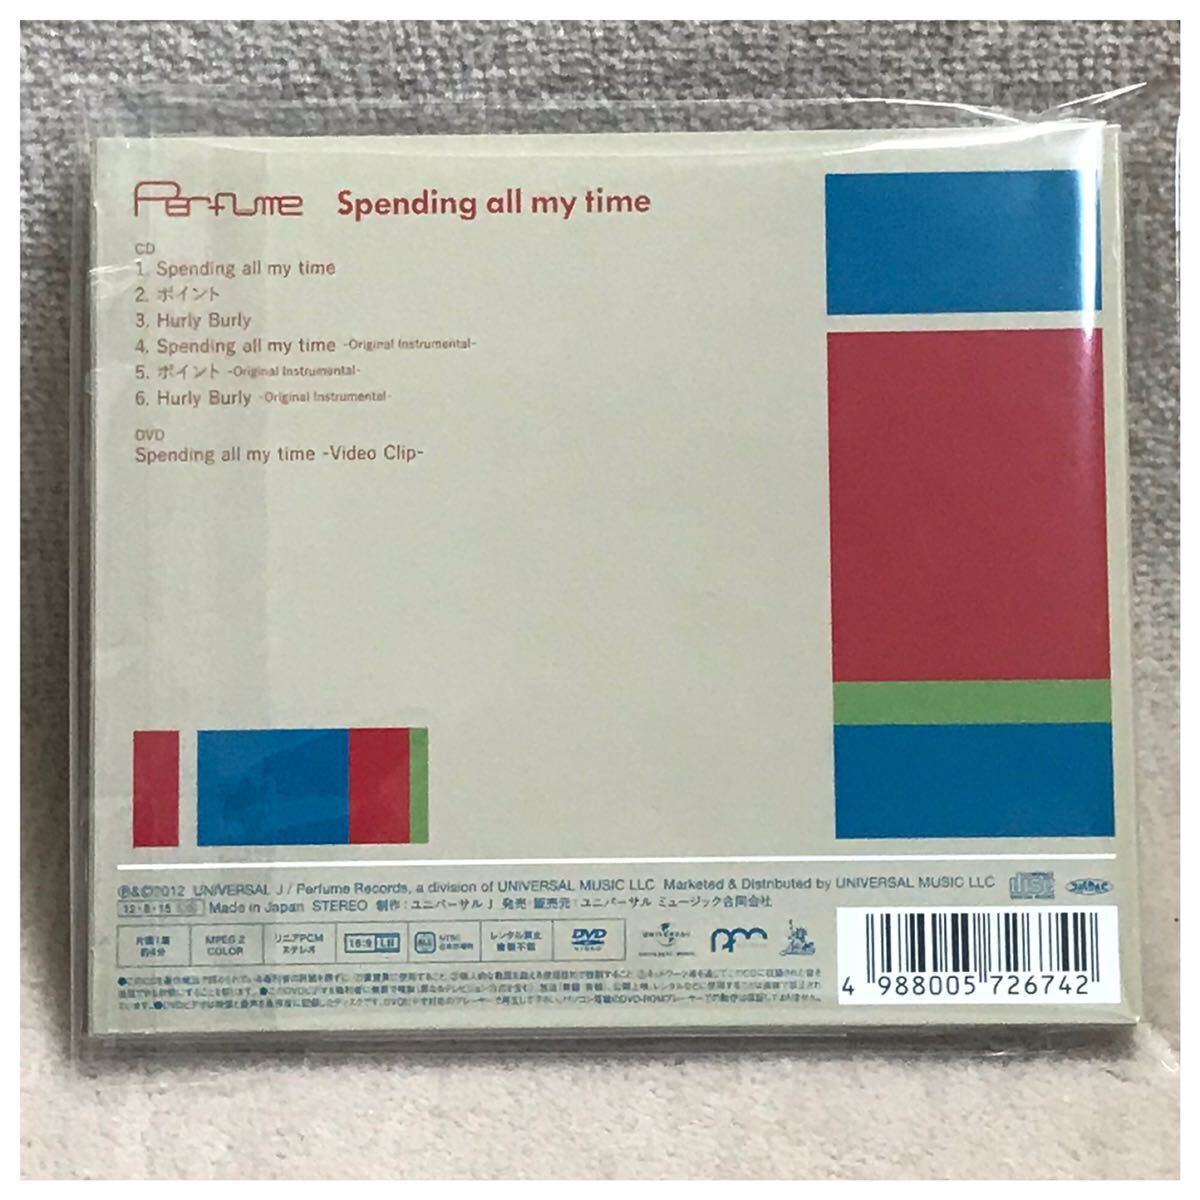 Spending all my time / Perfume《スリーブケース・初回限定盤・CD/DVD2枚組》_画像2